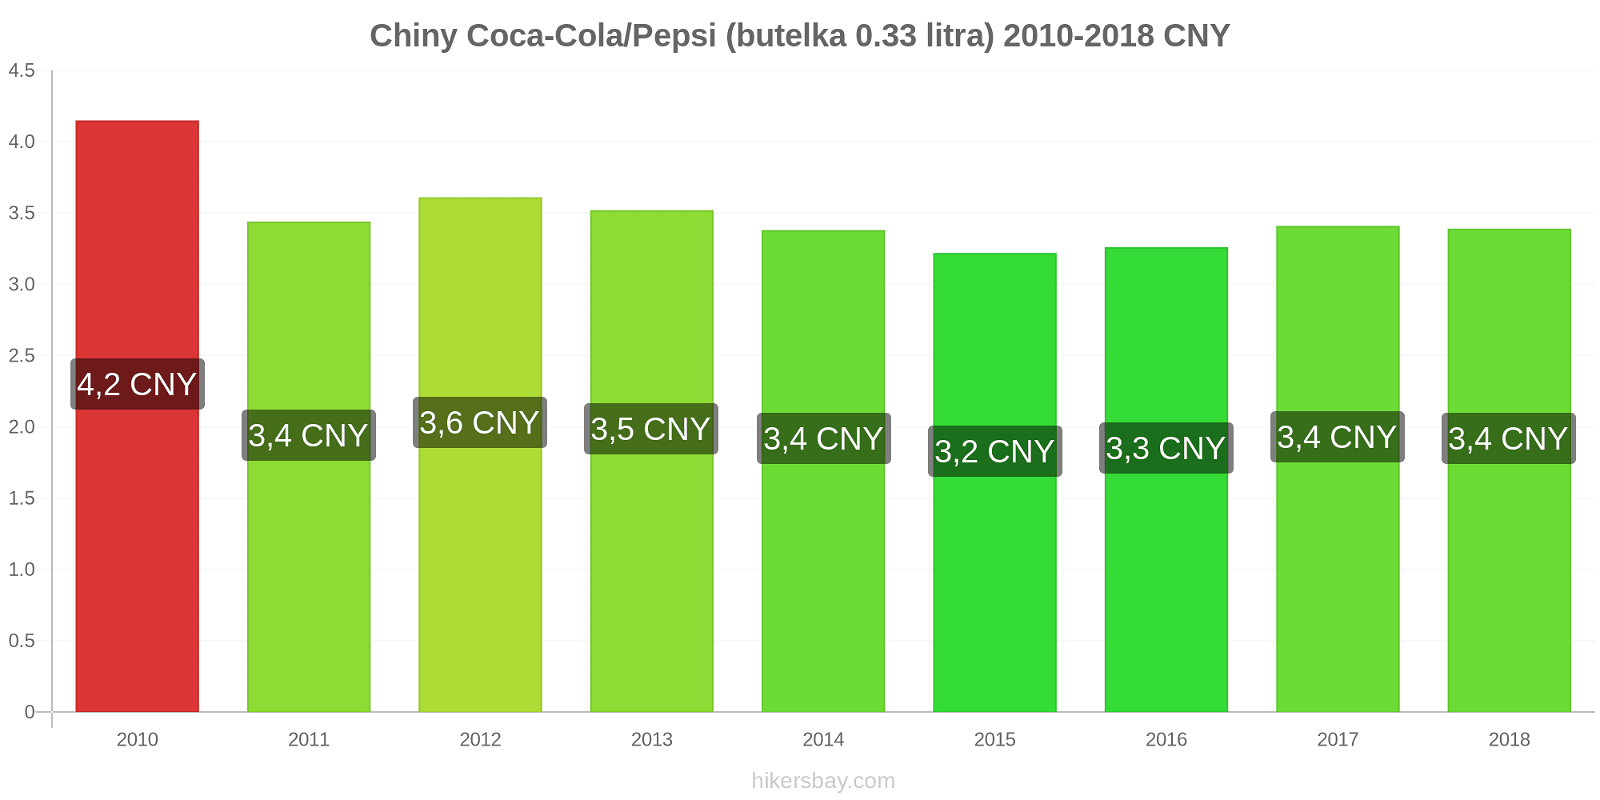 Chiny zmiany cen Coca-Cola/Pepsi (butelka 0.33 litra) hikersbay.com